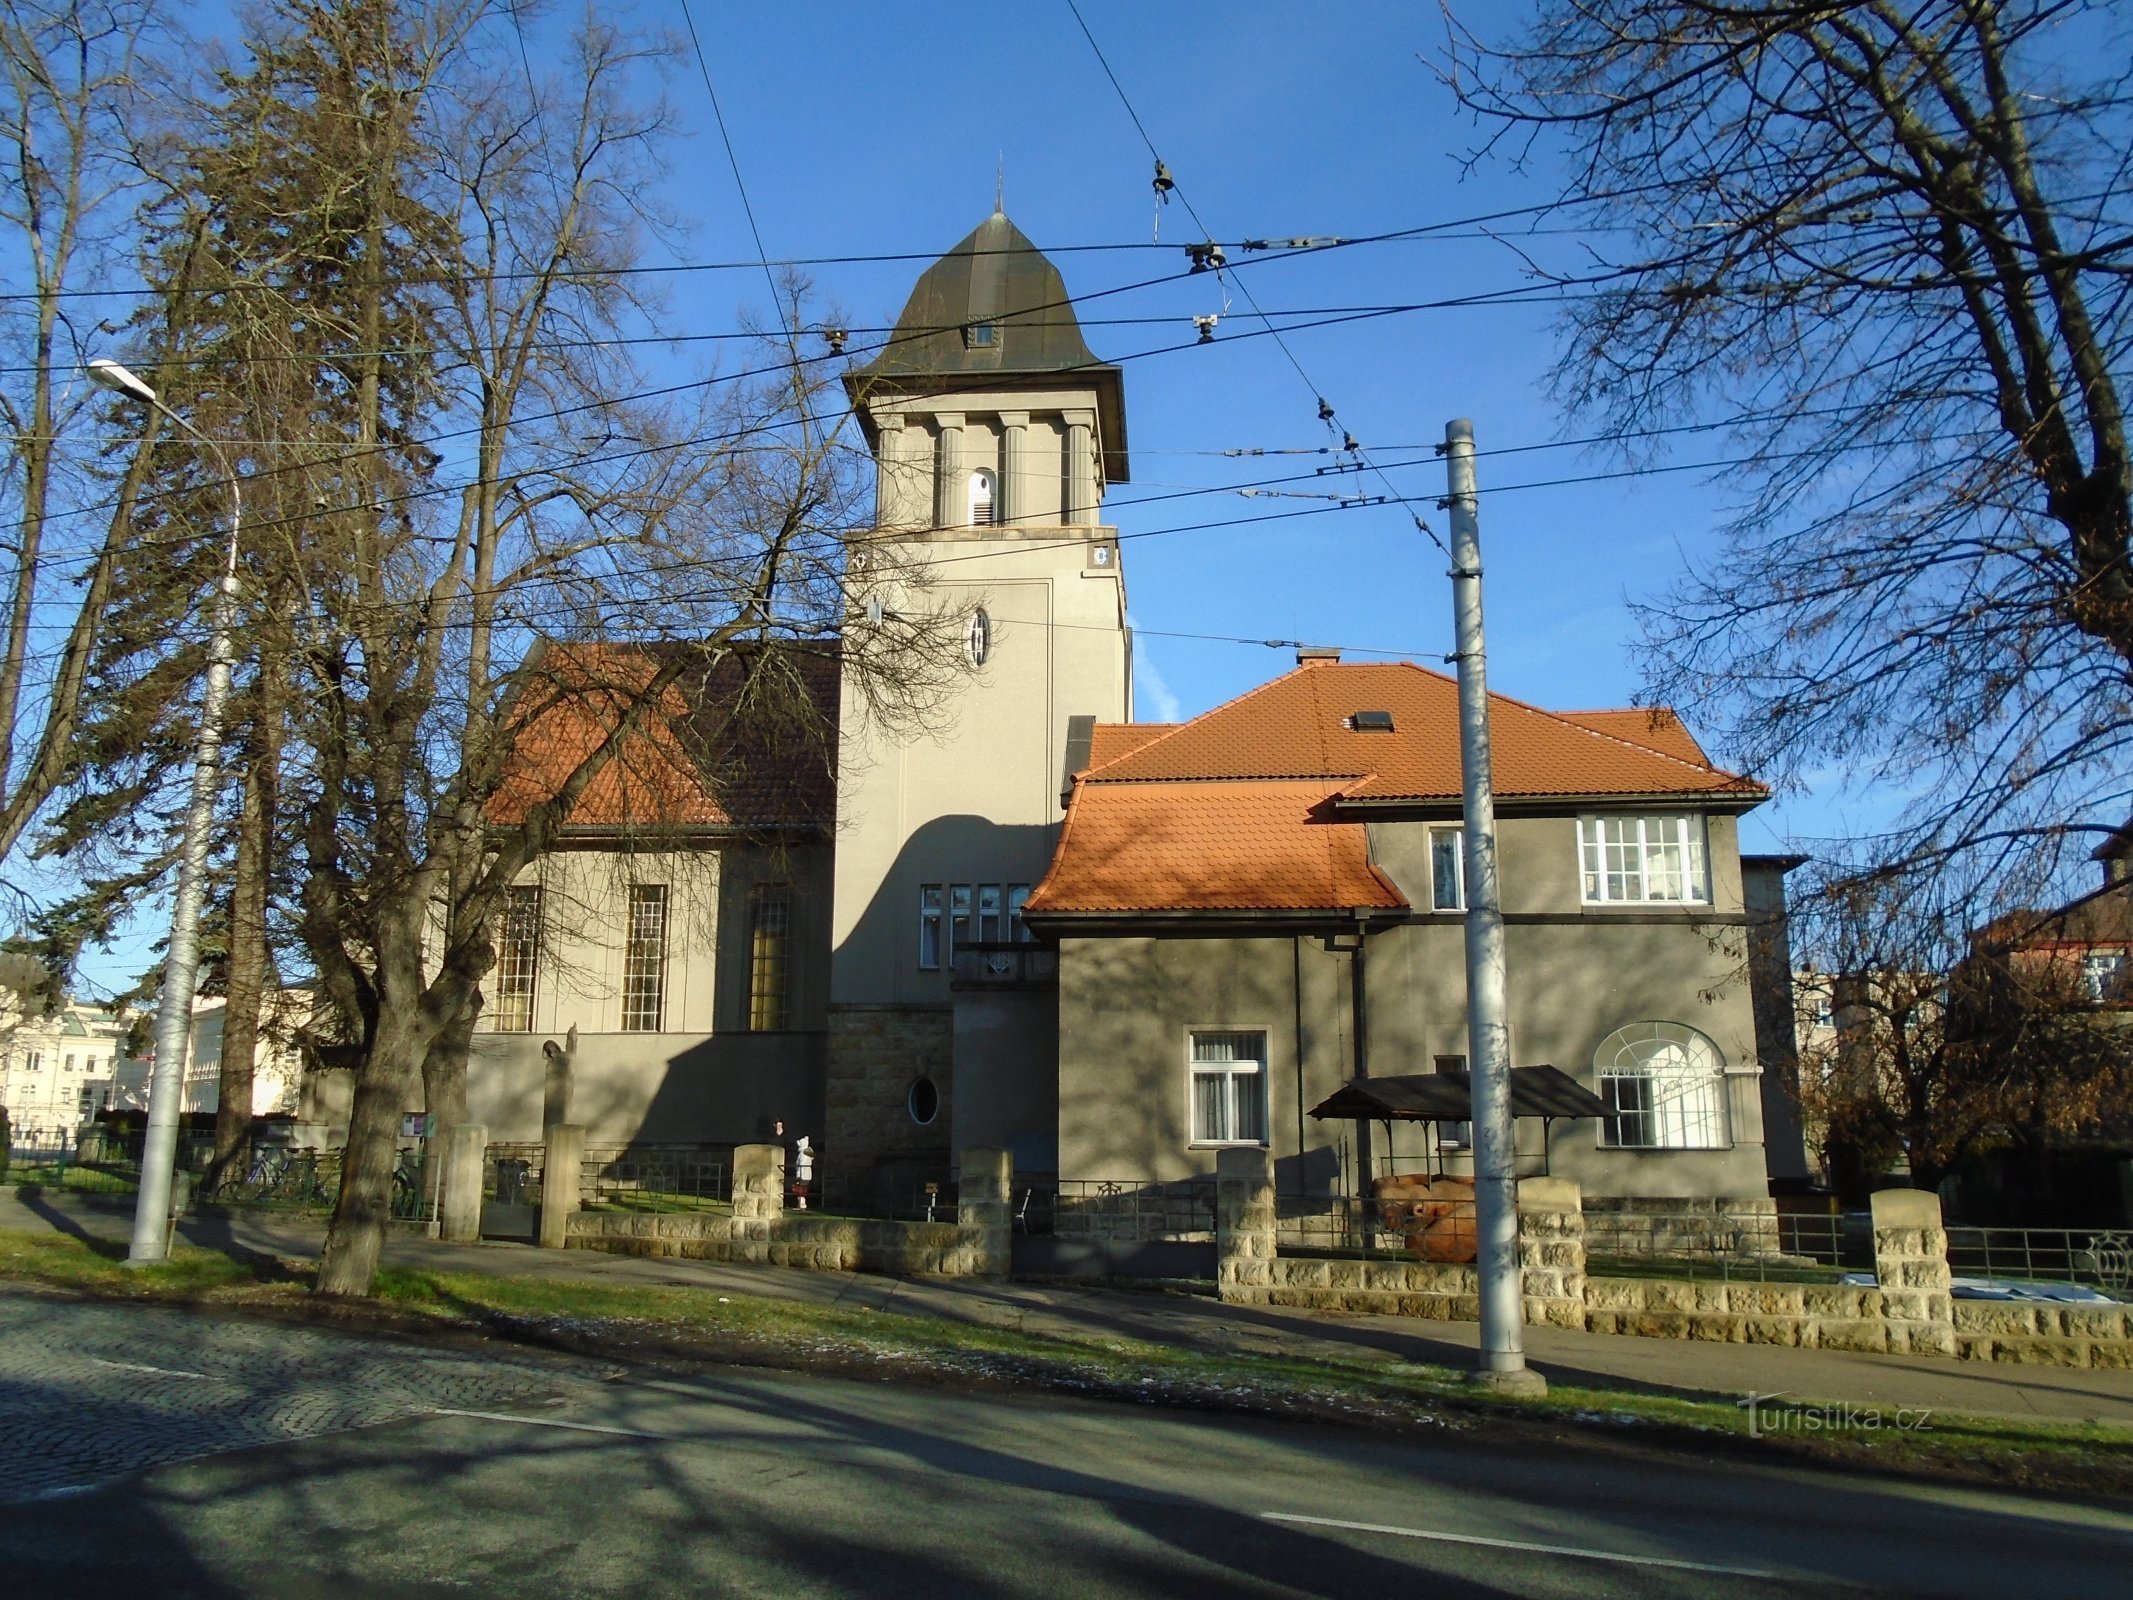 Євангельська церква з настоятелем (Градец Кралове, 10.12.2017)